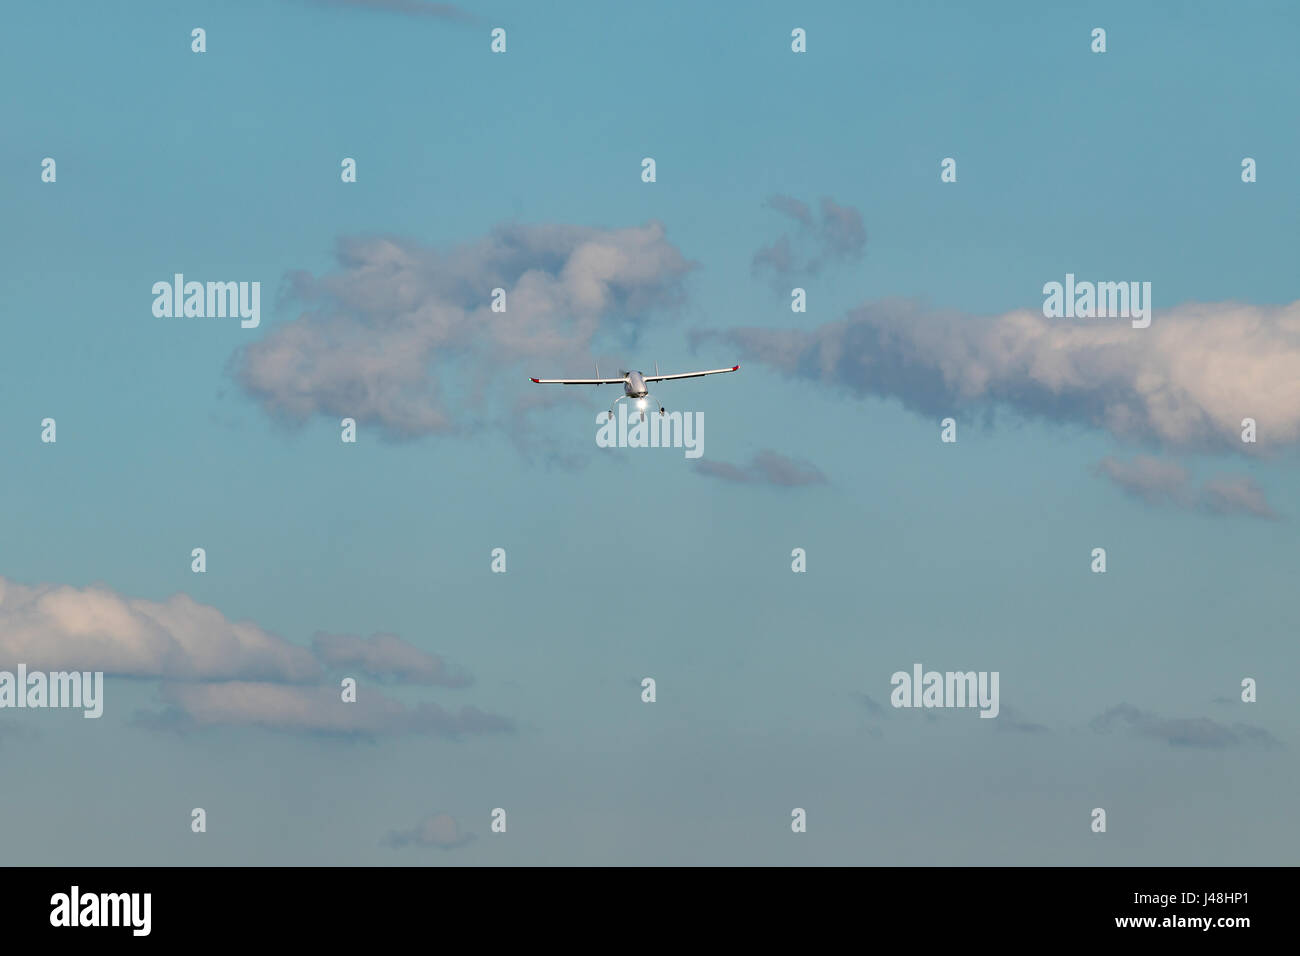 Vehículo aéreo no tripulado (UAV) en el cielo azul. Foto de stock